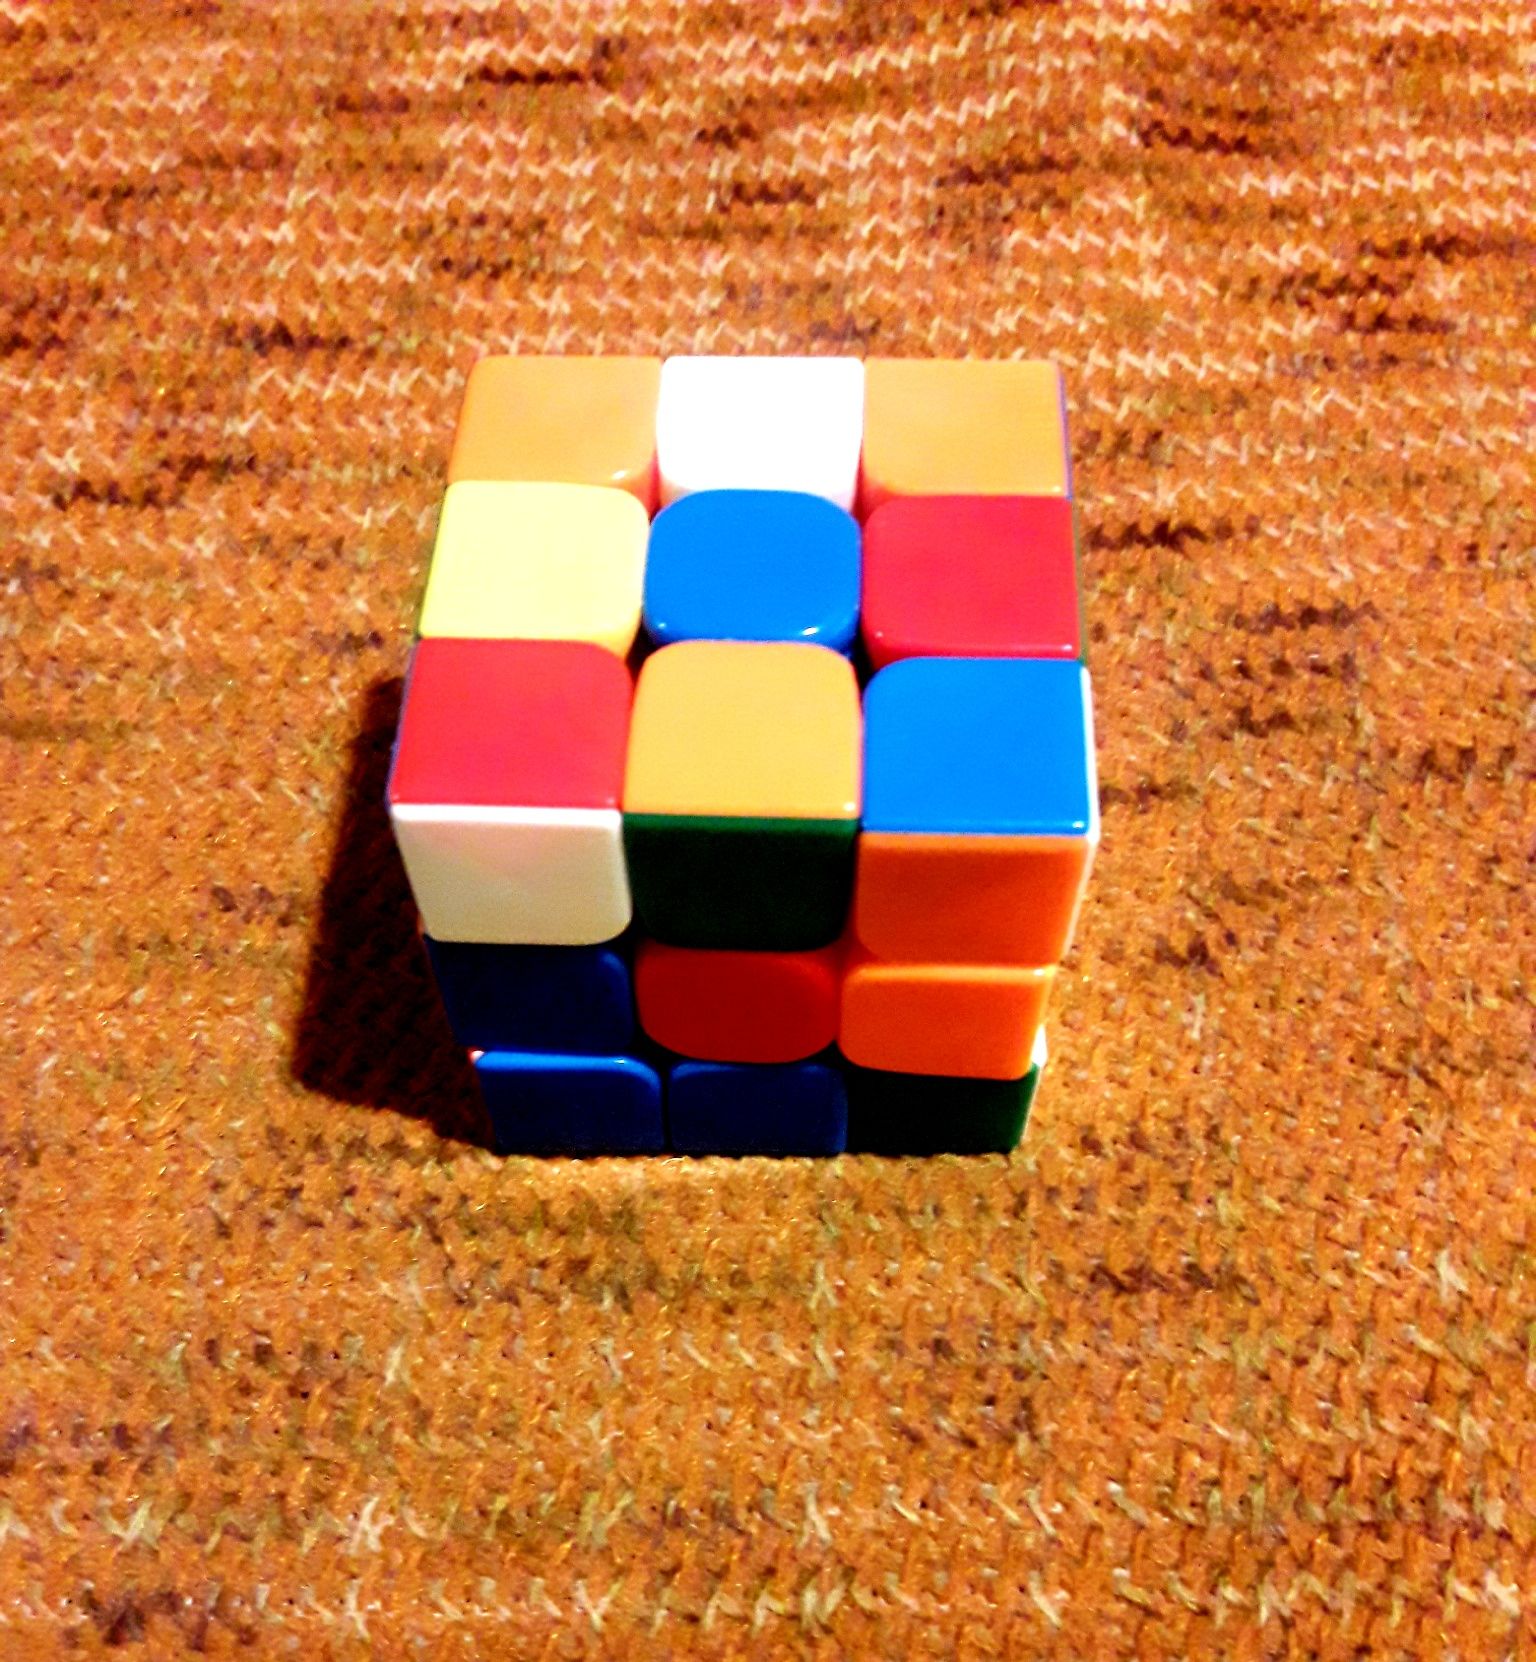 Кубік Рубіка професійний (довжина иа - 5,5см)